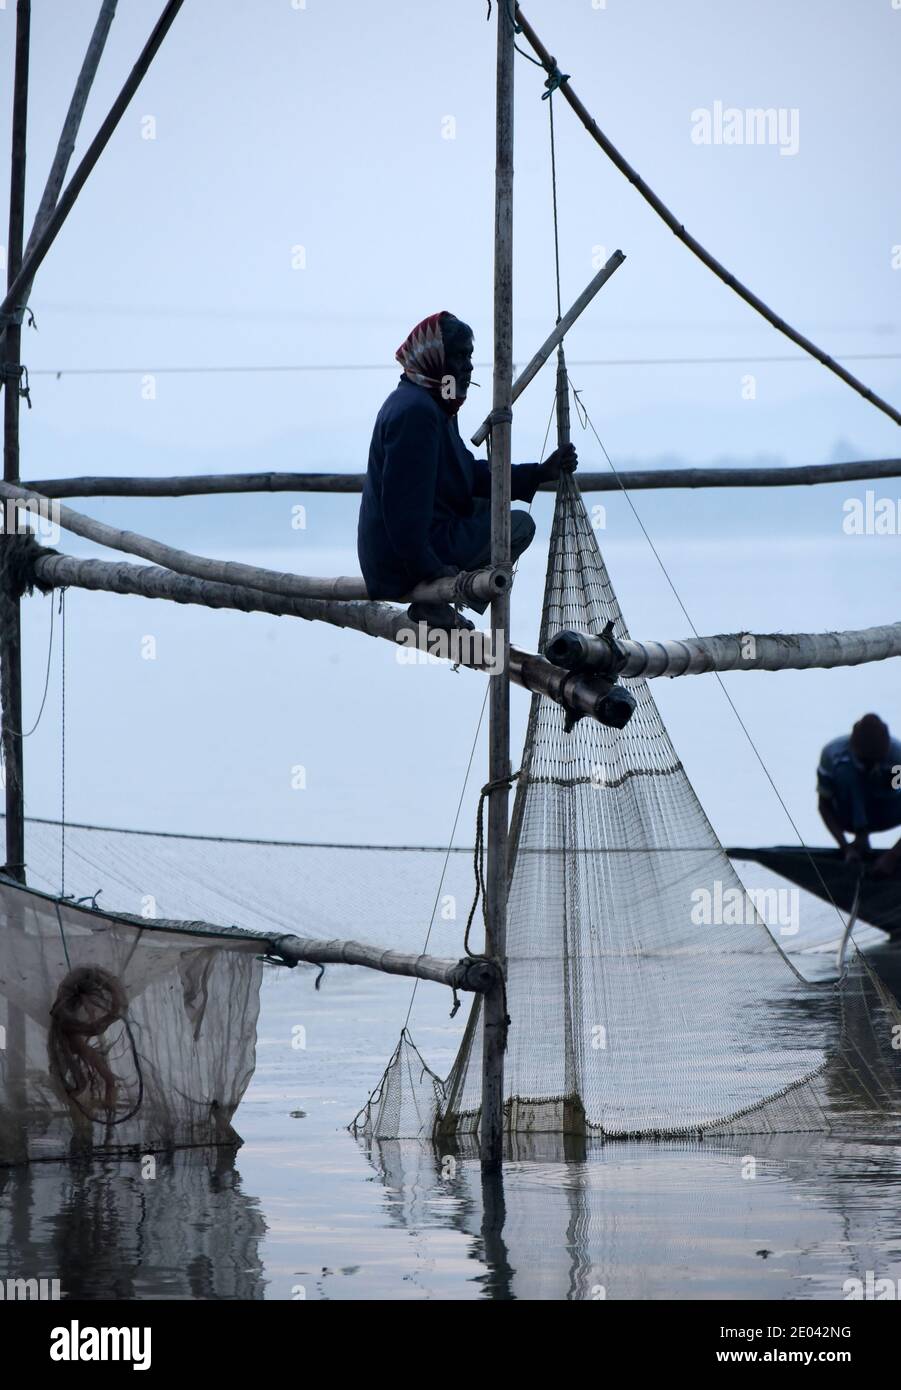 Guwahati, Assam, India. 29 Dic 2020. I pescatori indiani si siedono in una barca di campagna e pescano il pesce nel fiume Brahmaputra a Gauhati, India, martedì 29 dicembre 2020. Il fiume Brahmaputra è uno dei fiumi più grandi dell'Asia, che scorre dalla regione cinese del Tibet ed entra in India Credit: Dasarath Deka/ZUMA Wire/Alamy Live News Foto Stock